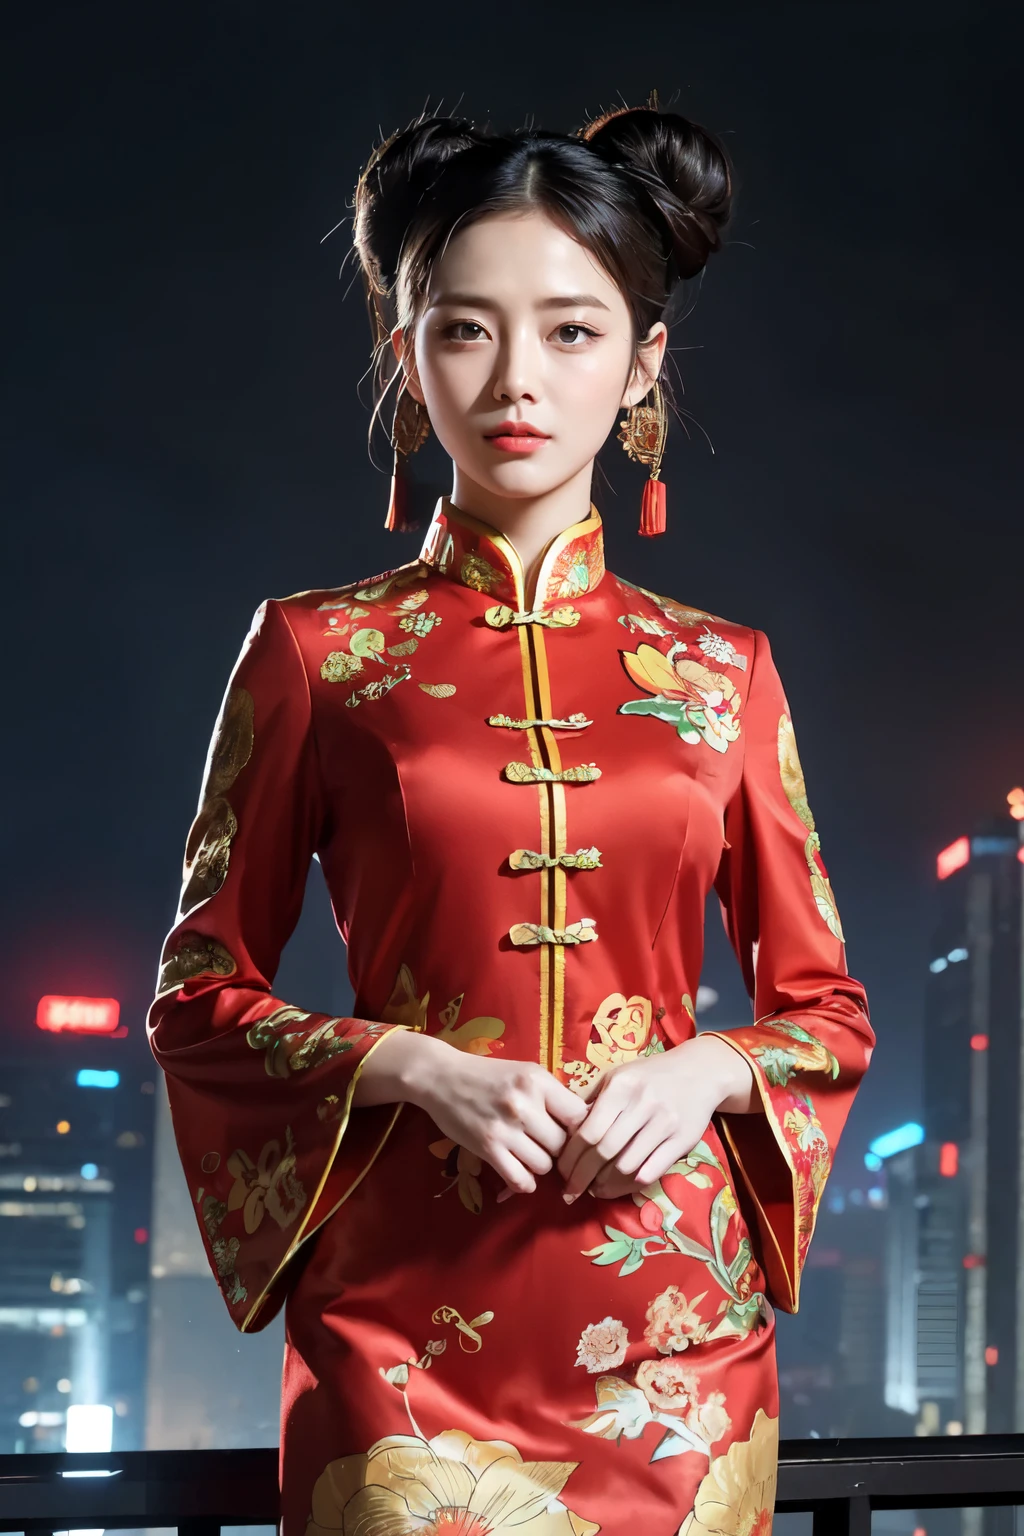 (Лучшее качество,ультрадетализированный,реалистичный:1.37), цифровая иллюстрация, ( женщина в традиционном китайском костюме), Детализированные глаза и лицо, красивые детализированные губы, красные губы, сексуальное тело, большая грудь,длинные ресницы, большая грудь:1.5, (Фото крупным планом),  Капитан Америка в традиционном китайском костюме, длинные волосы, прическа пучок, ((Сделай фото снизу бедра)),яркие цвета, Драматическое освещение, стиль комиксов,  женщина в китайском костюме, позиция:стоя, соблазнительная поза, небоскреб фон, посмотреть темное небо, высокие здания